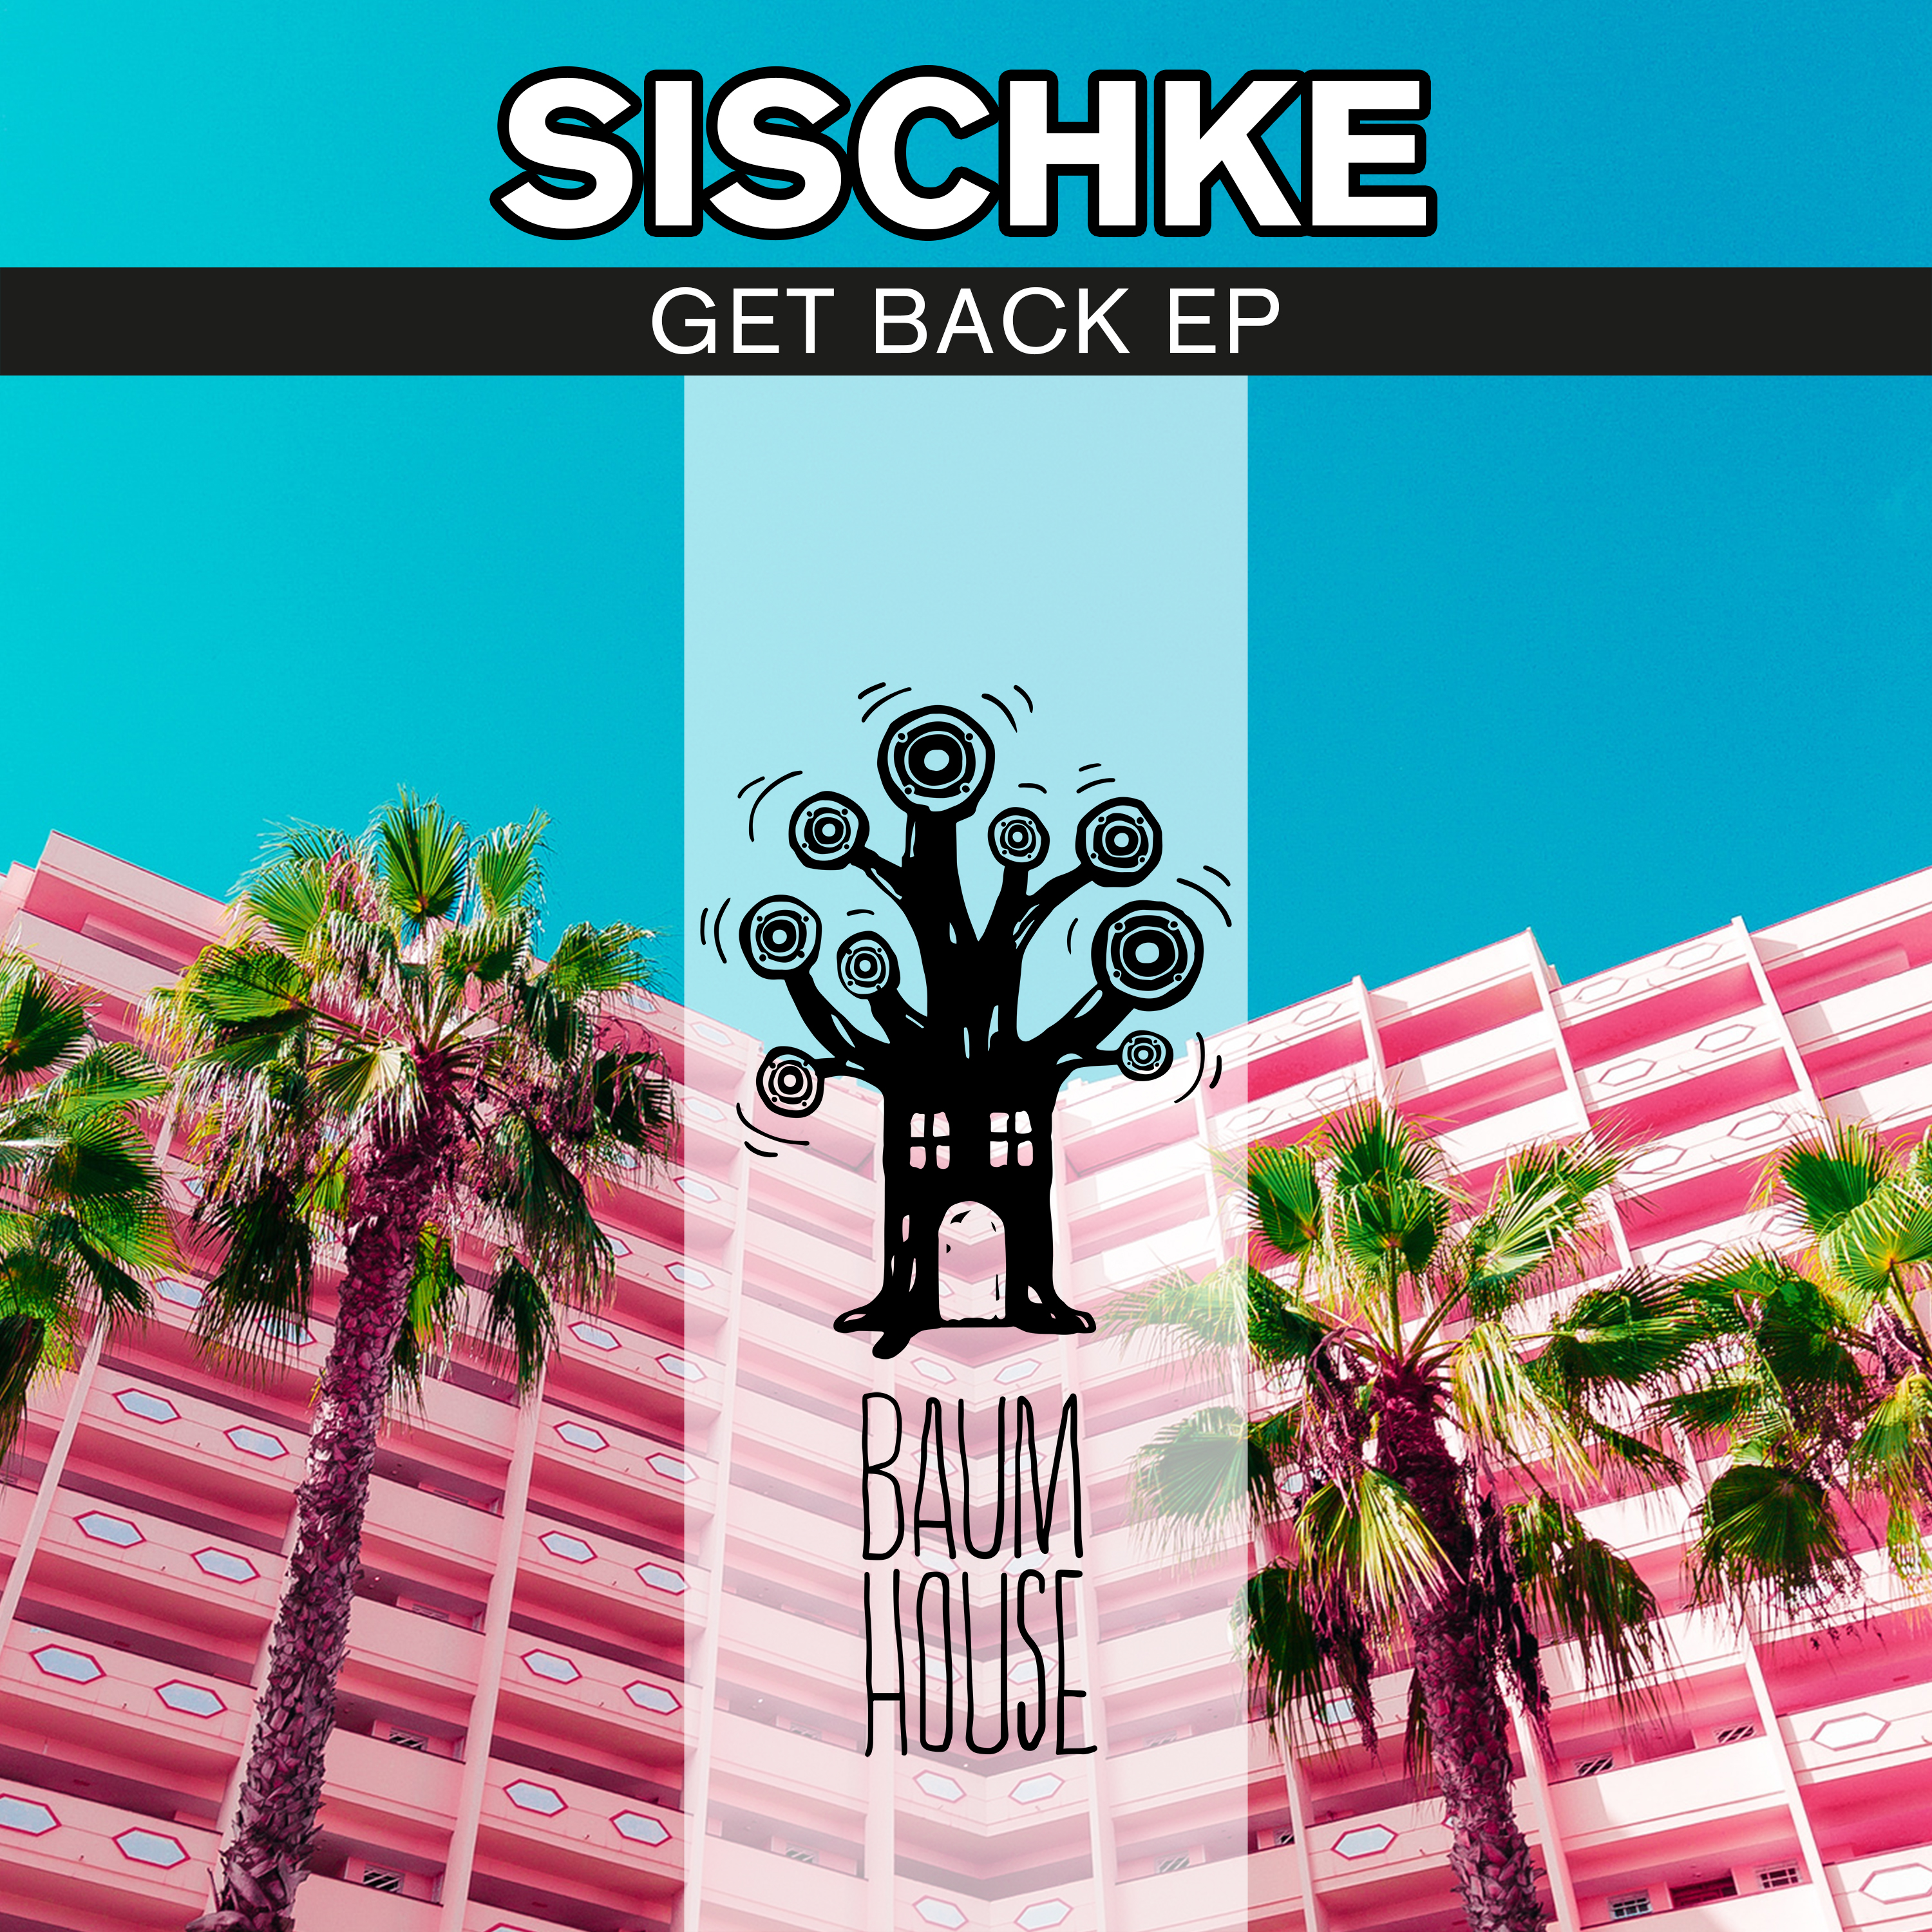 Sischke – “Get Back” EP